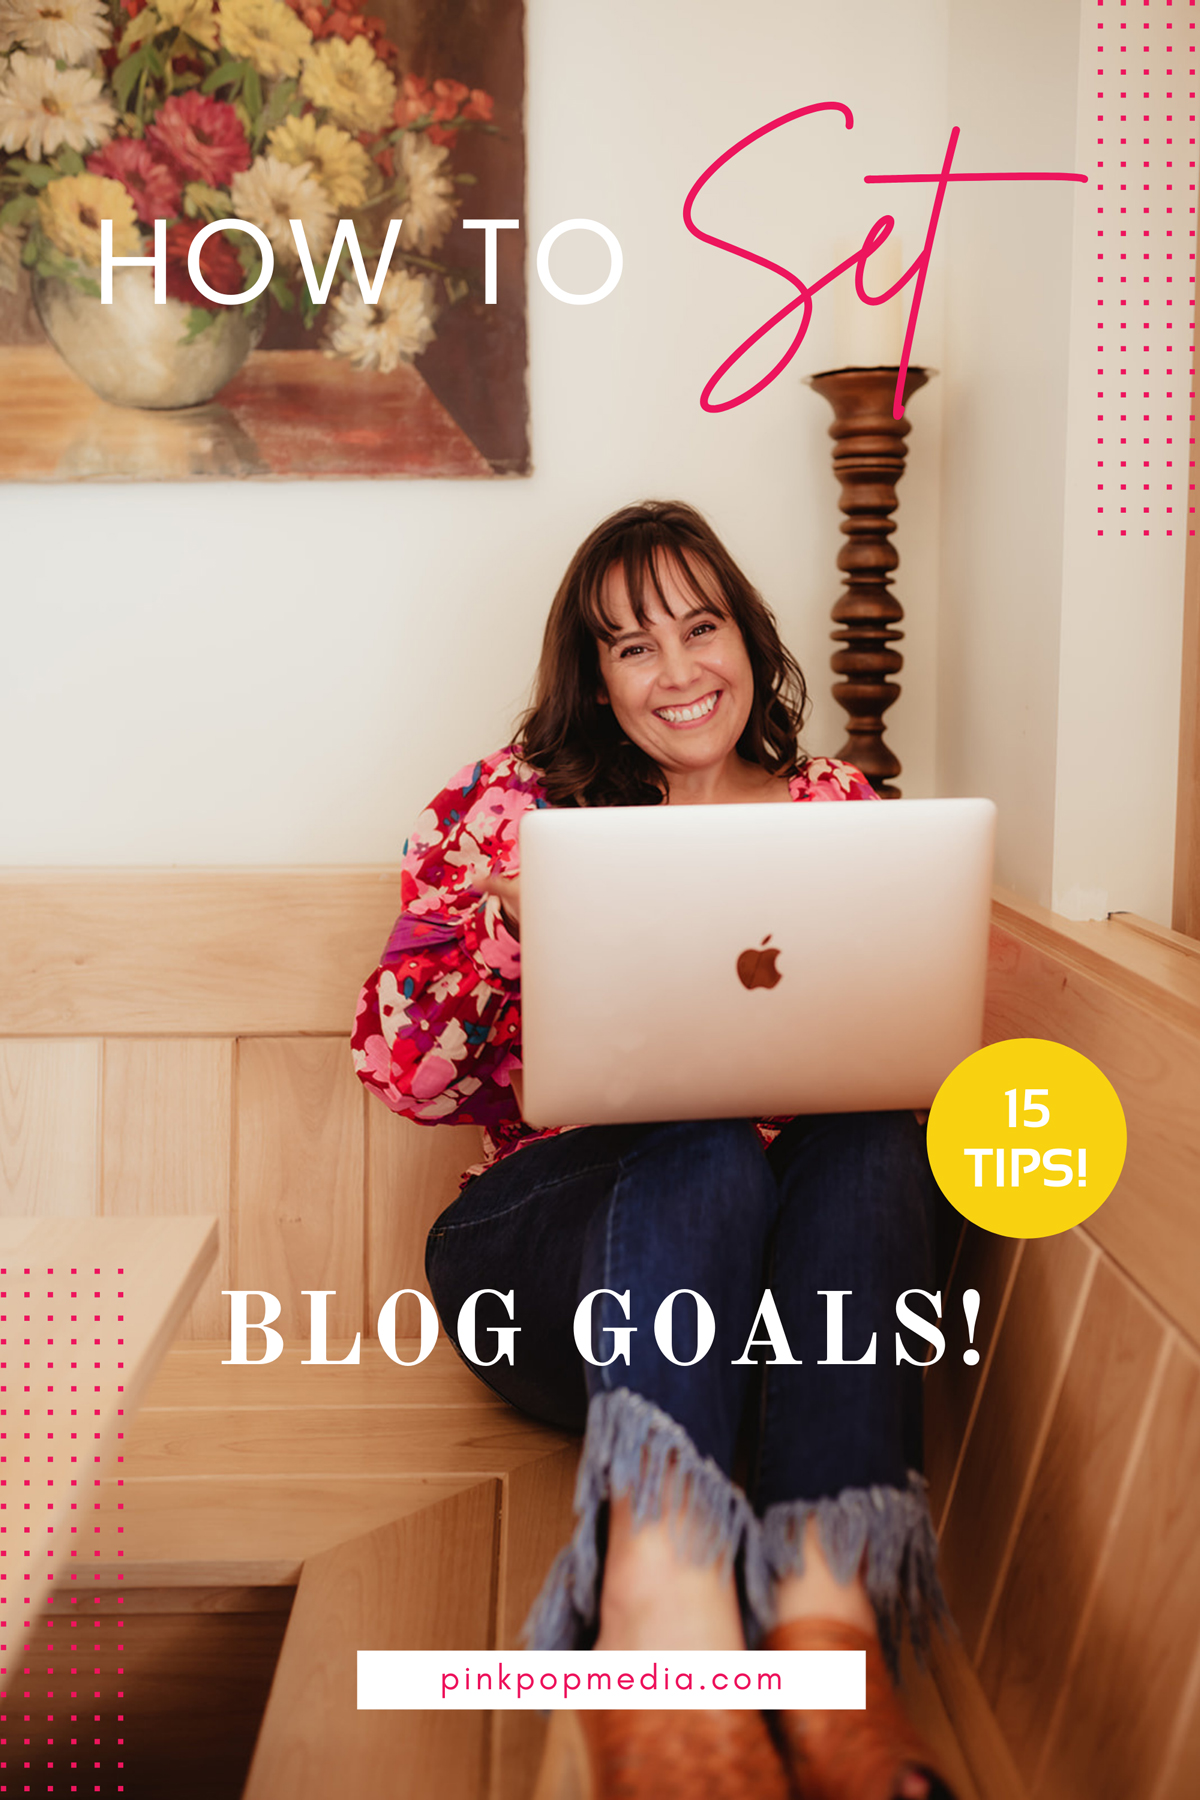 Tips for setting blog goals